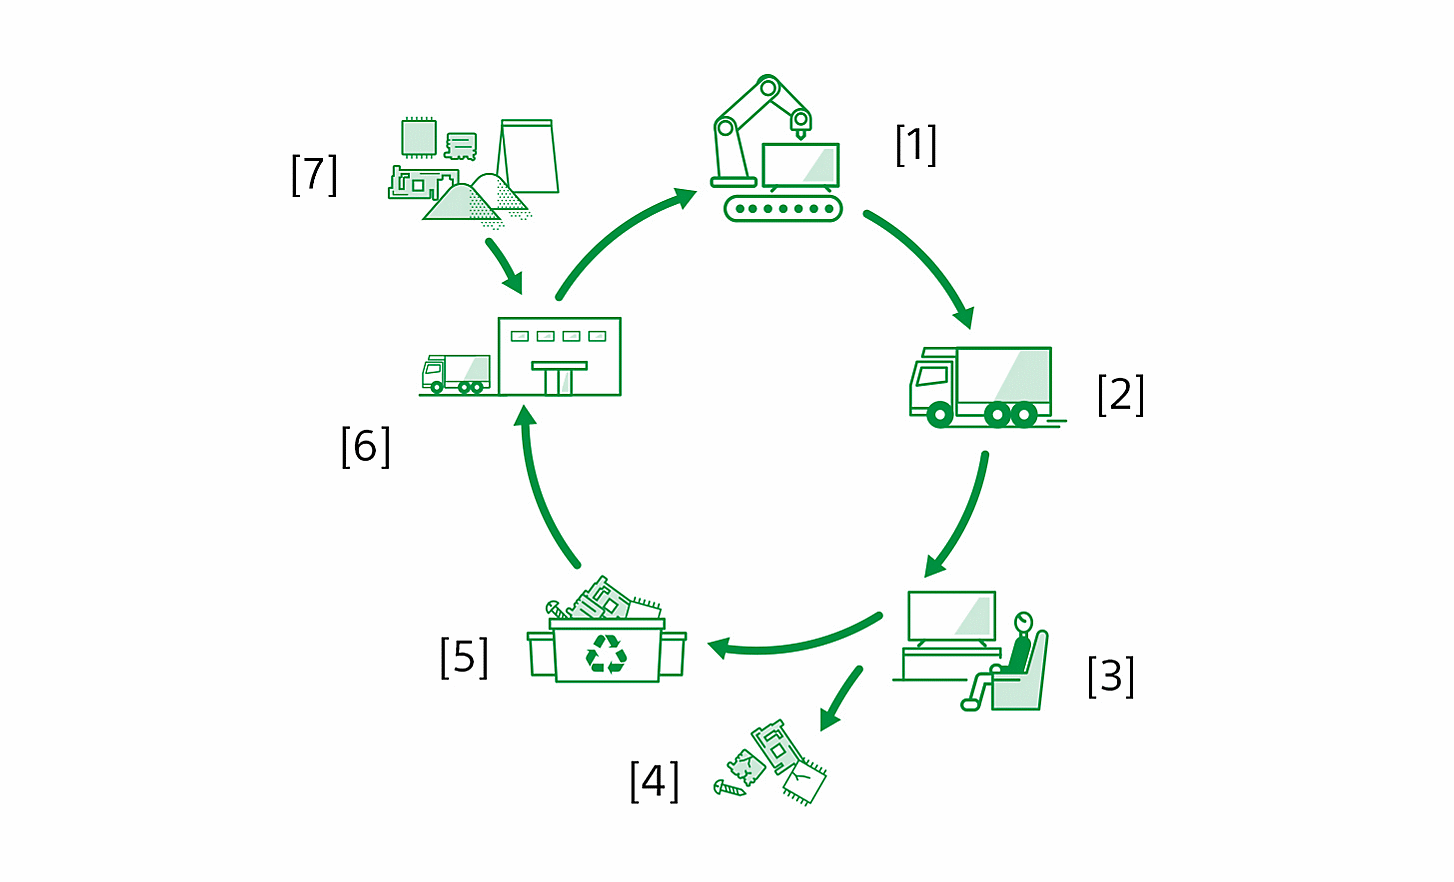 Diagrama en el que se muestra el ciclo de vida de un producto desde la fabricación hasta el reciclaje de los materiales, con etiquetas: [1] Fabricación de productos en fábricas [2] Logística [3] Uso de los productos por parte de los clientes [4] Extracción de recursos y eliminación [5] Sitios de reciclaje [6] Fabricación de partes por parte de los proveedores [7] Extracción de recursos